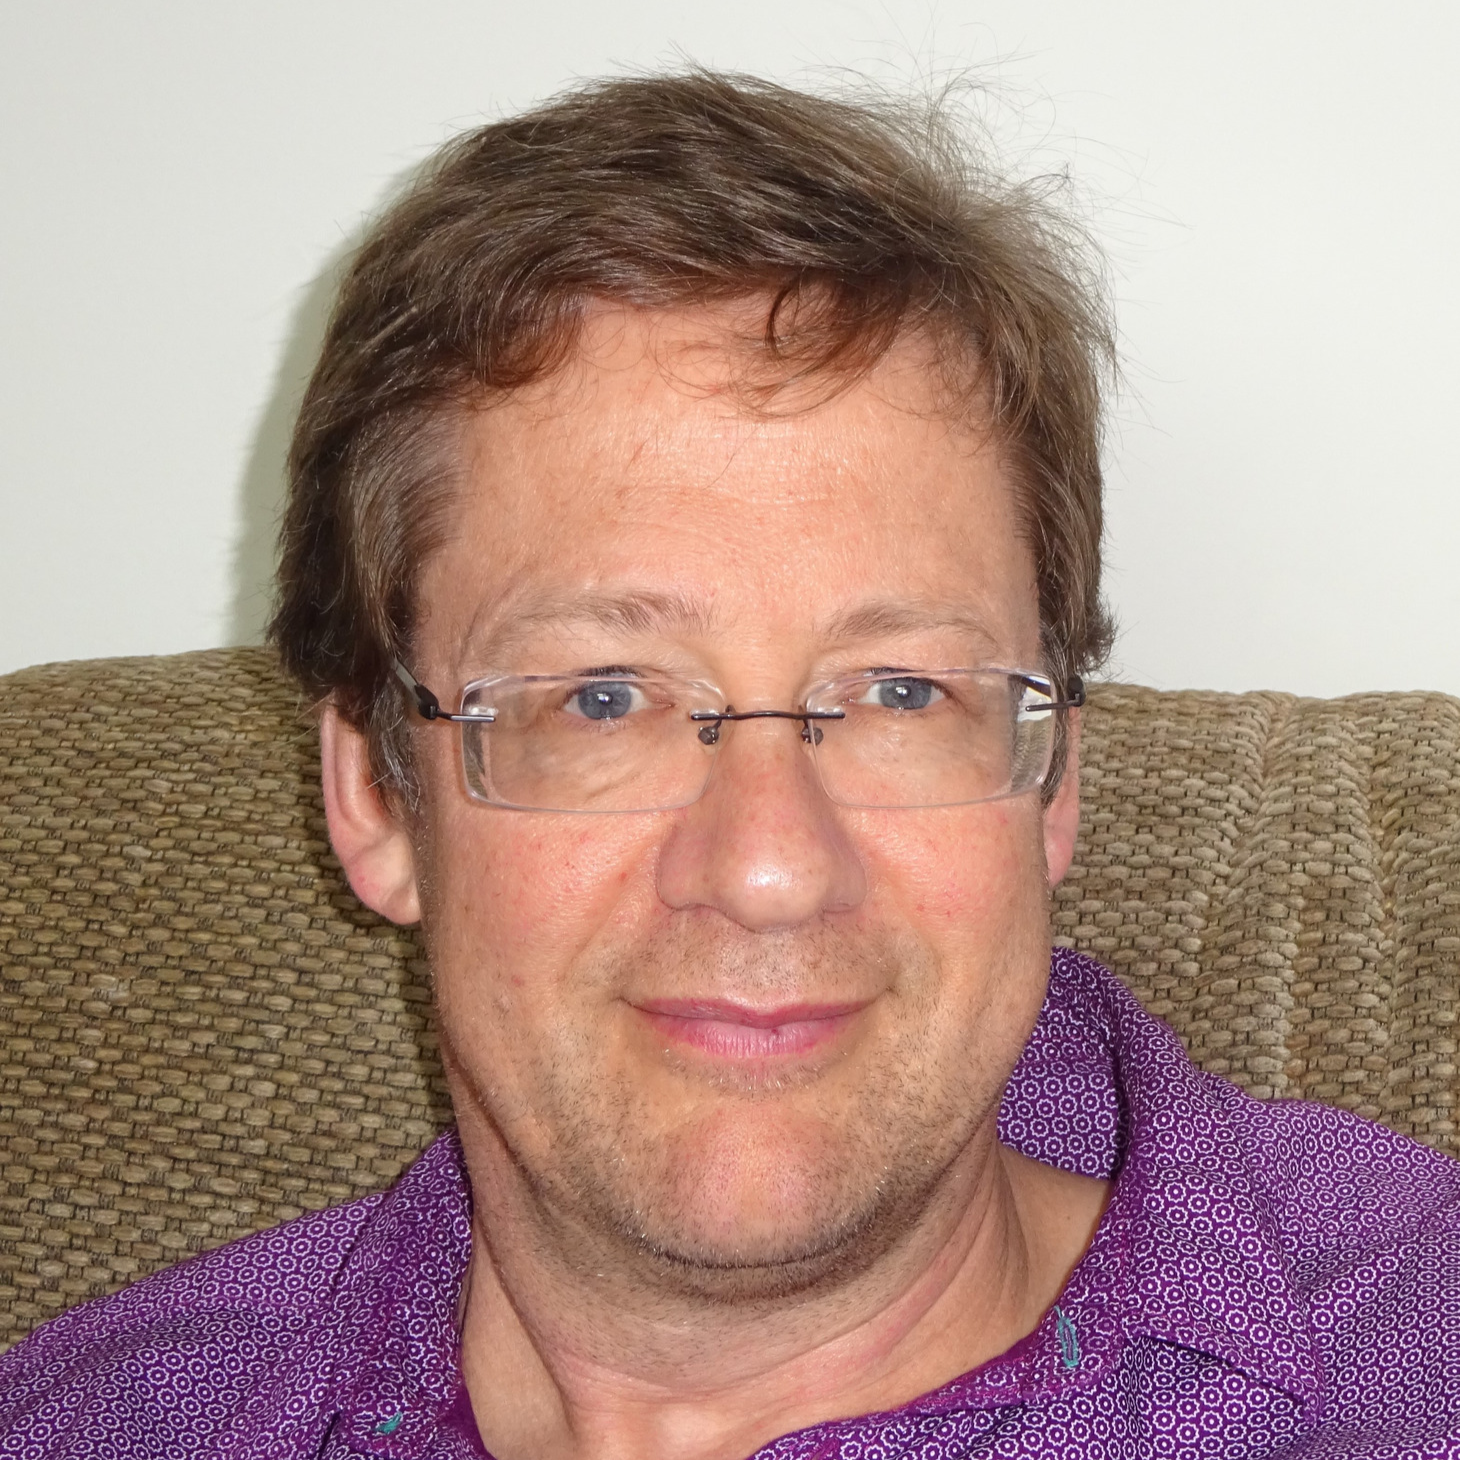 Headshot of Philip wearing glasses and purple shirt